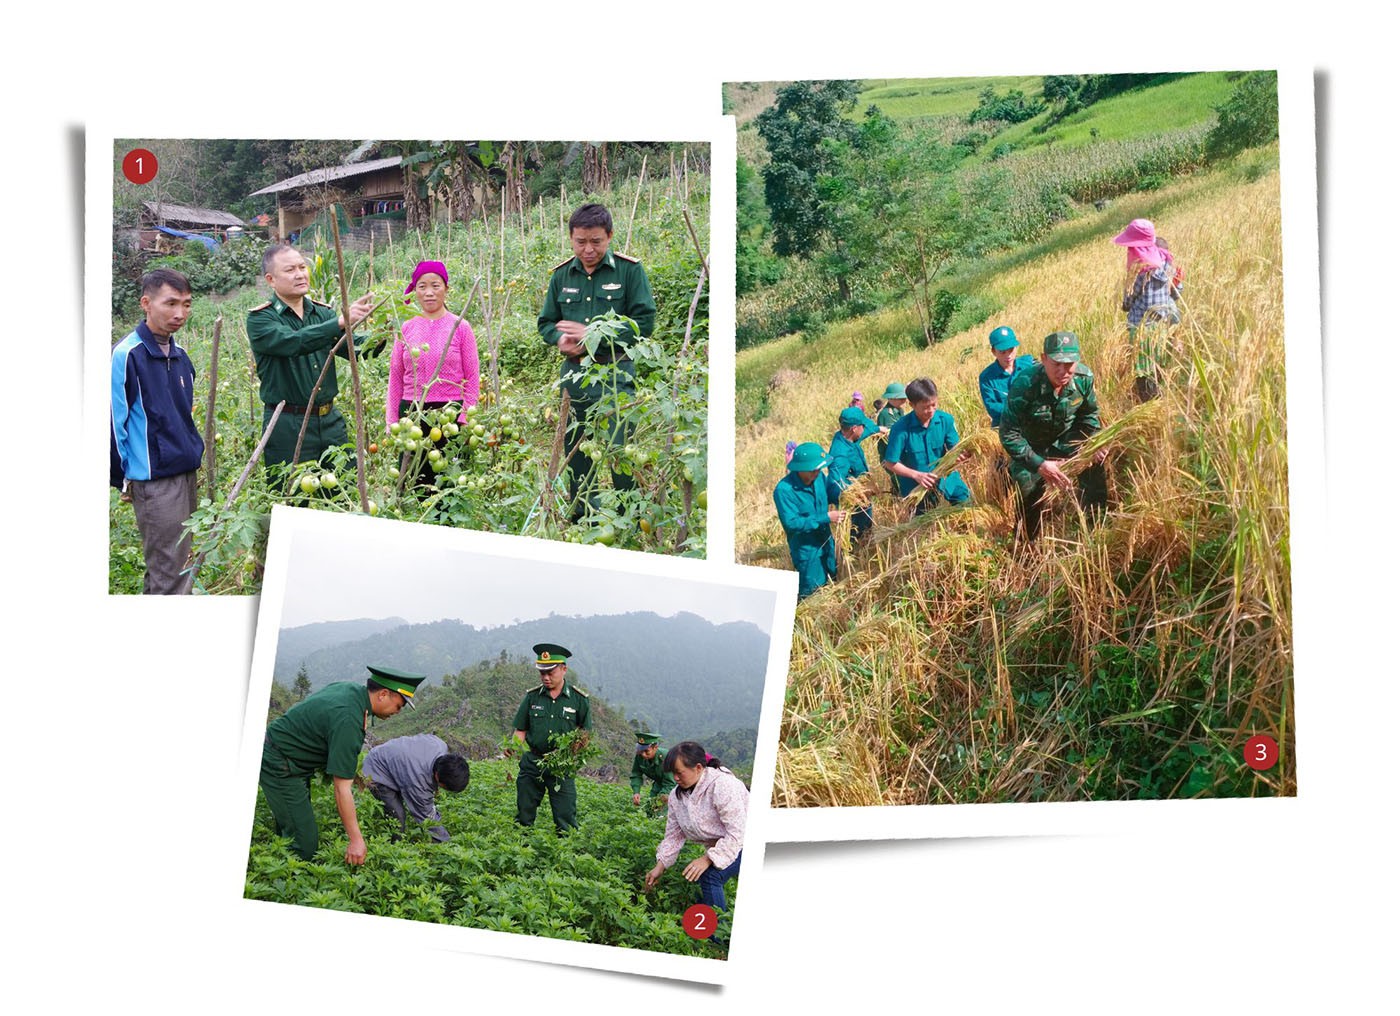 Chuyện những người “Ăn rừng ngủ núi” giữ biên ở Hà Giang - Bài 2: Đảm bảo an ninh biên giới - Giữ vững chủ quyền quốc gia